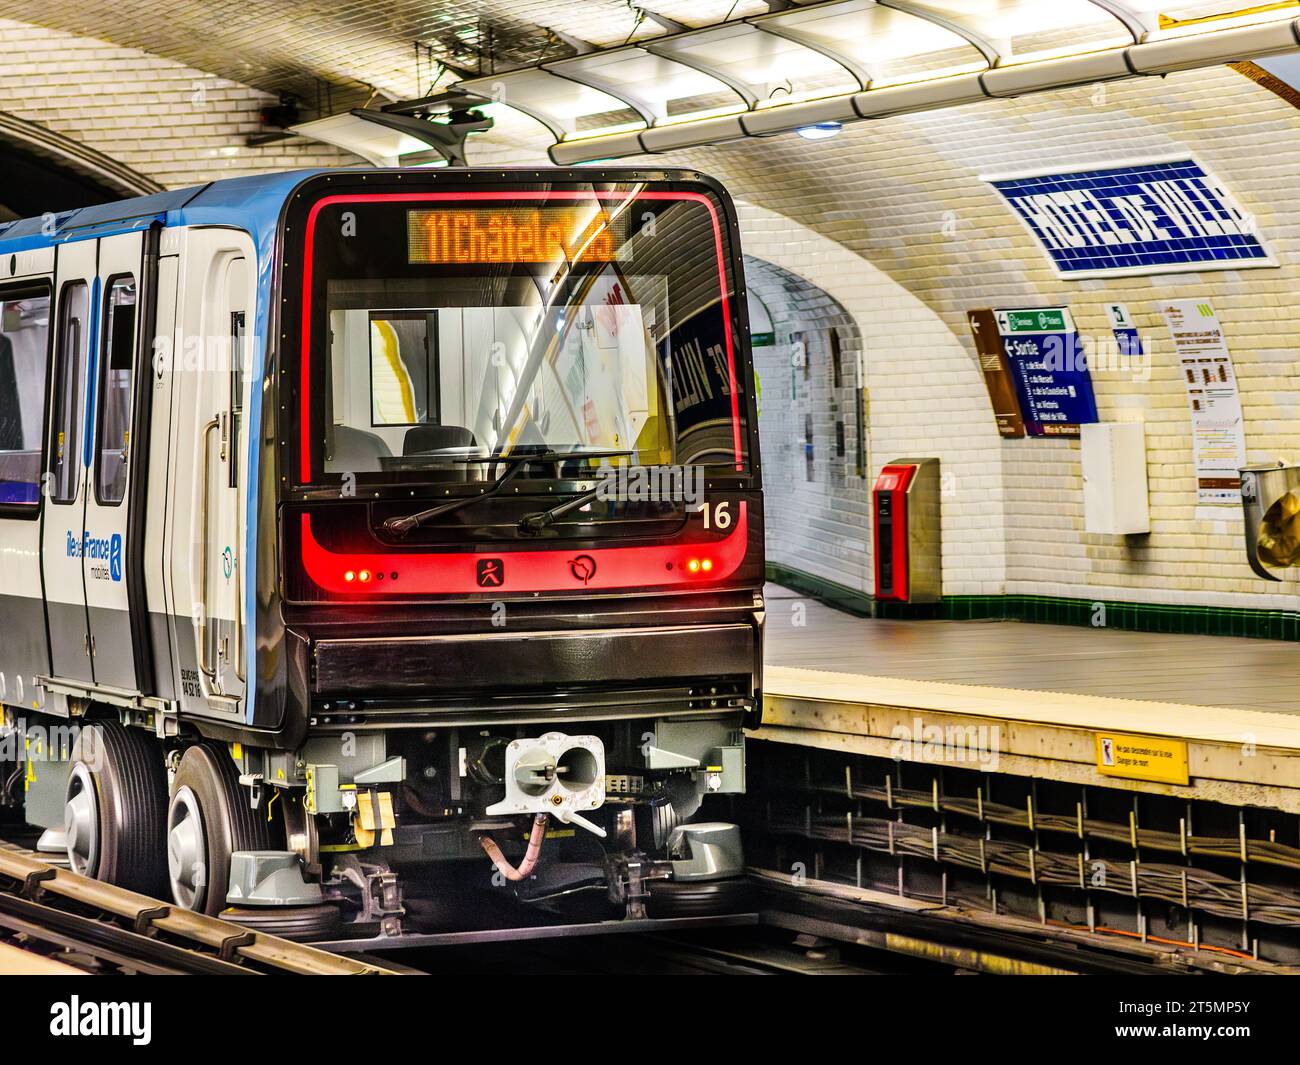 Métro train leaving platform of Hotel de Ville underground station - Paris 4, France. Stock Photo